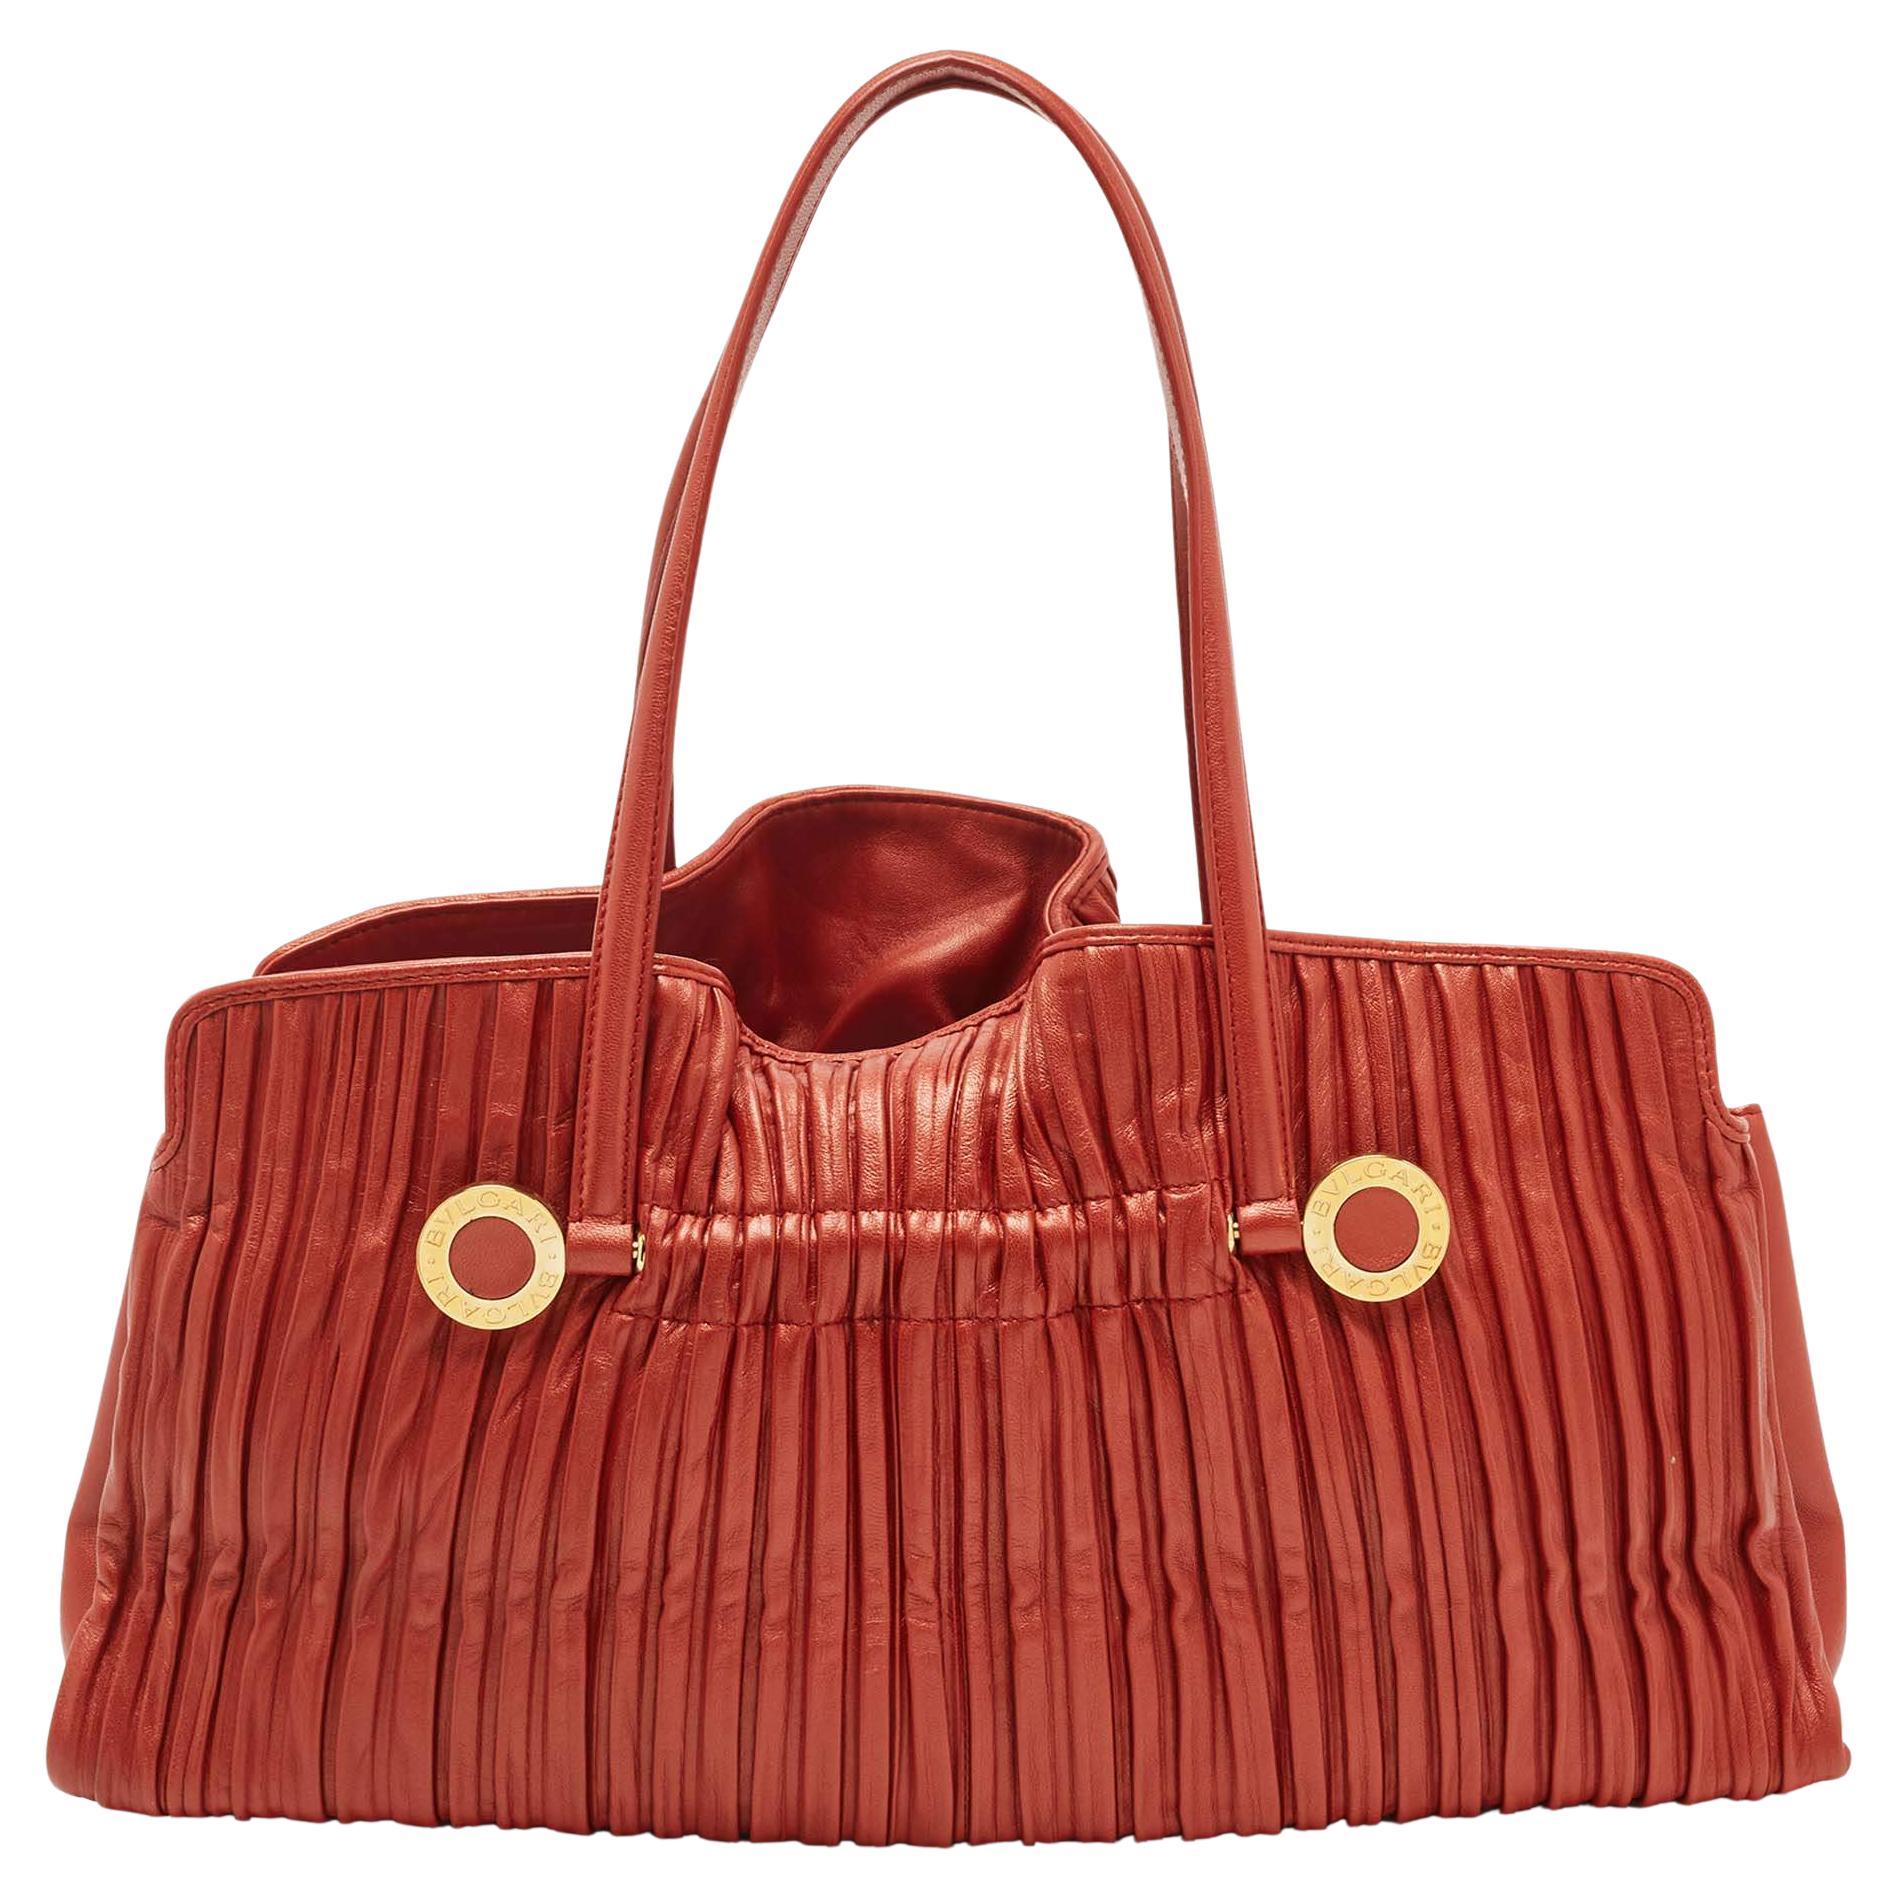 Bvlgari women's bag  Hermes bag birkin, Bags, Bvlgari bags